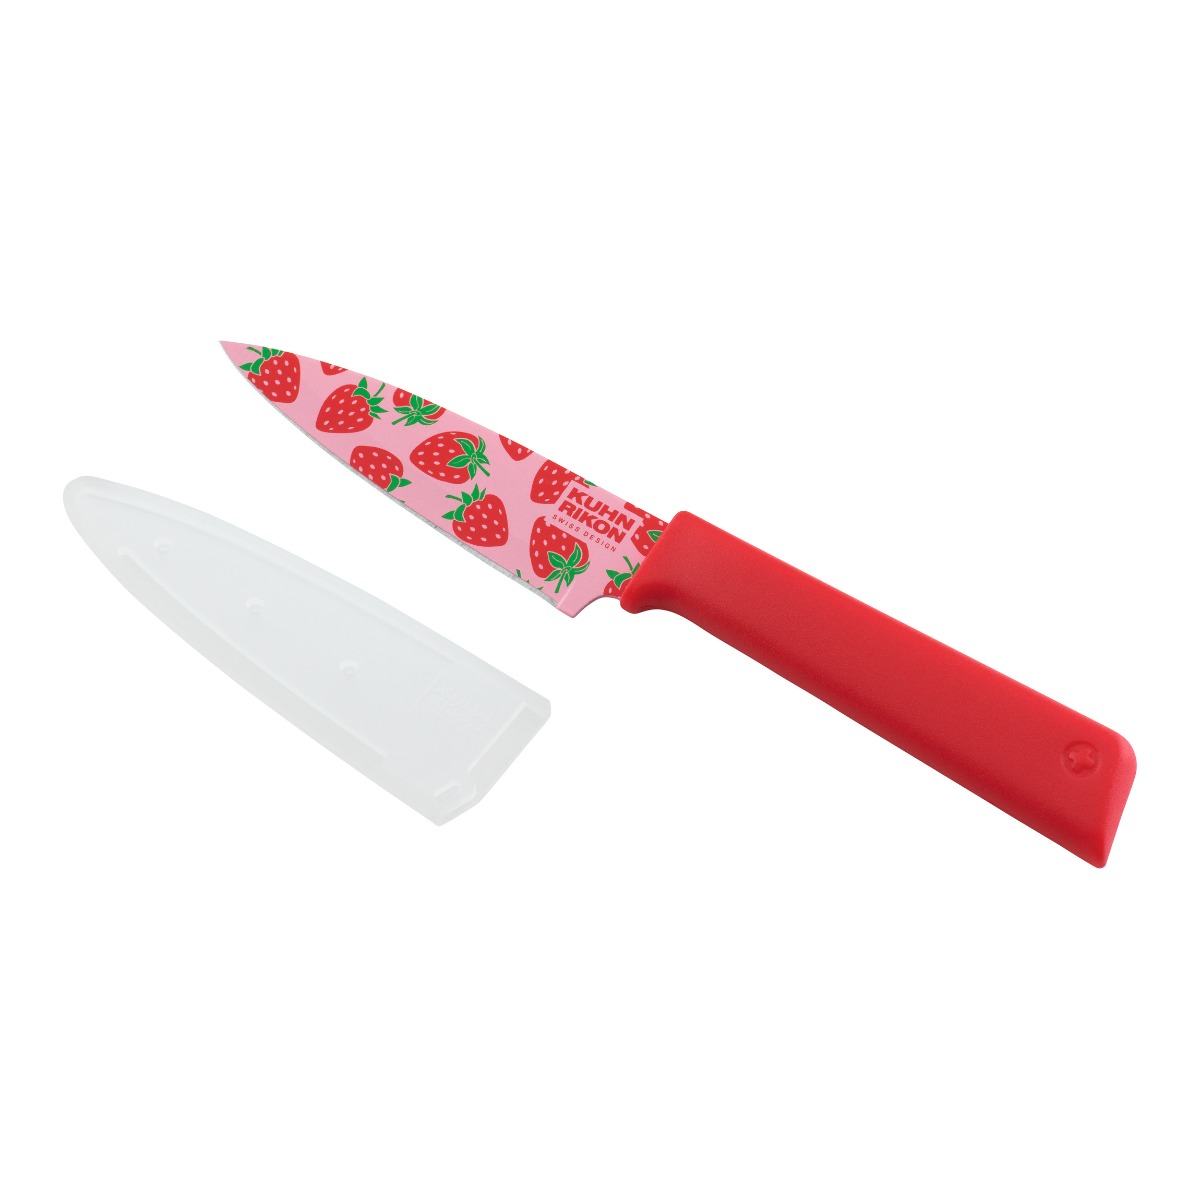 Kuhn Rikon - Colori(r)+ Funky Fruit Paring Knife Strawberry